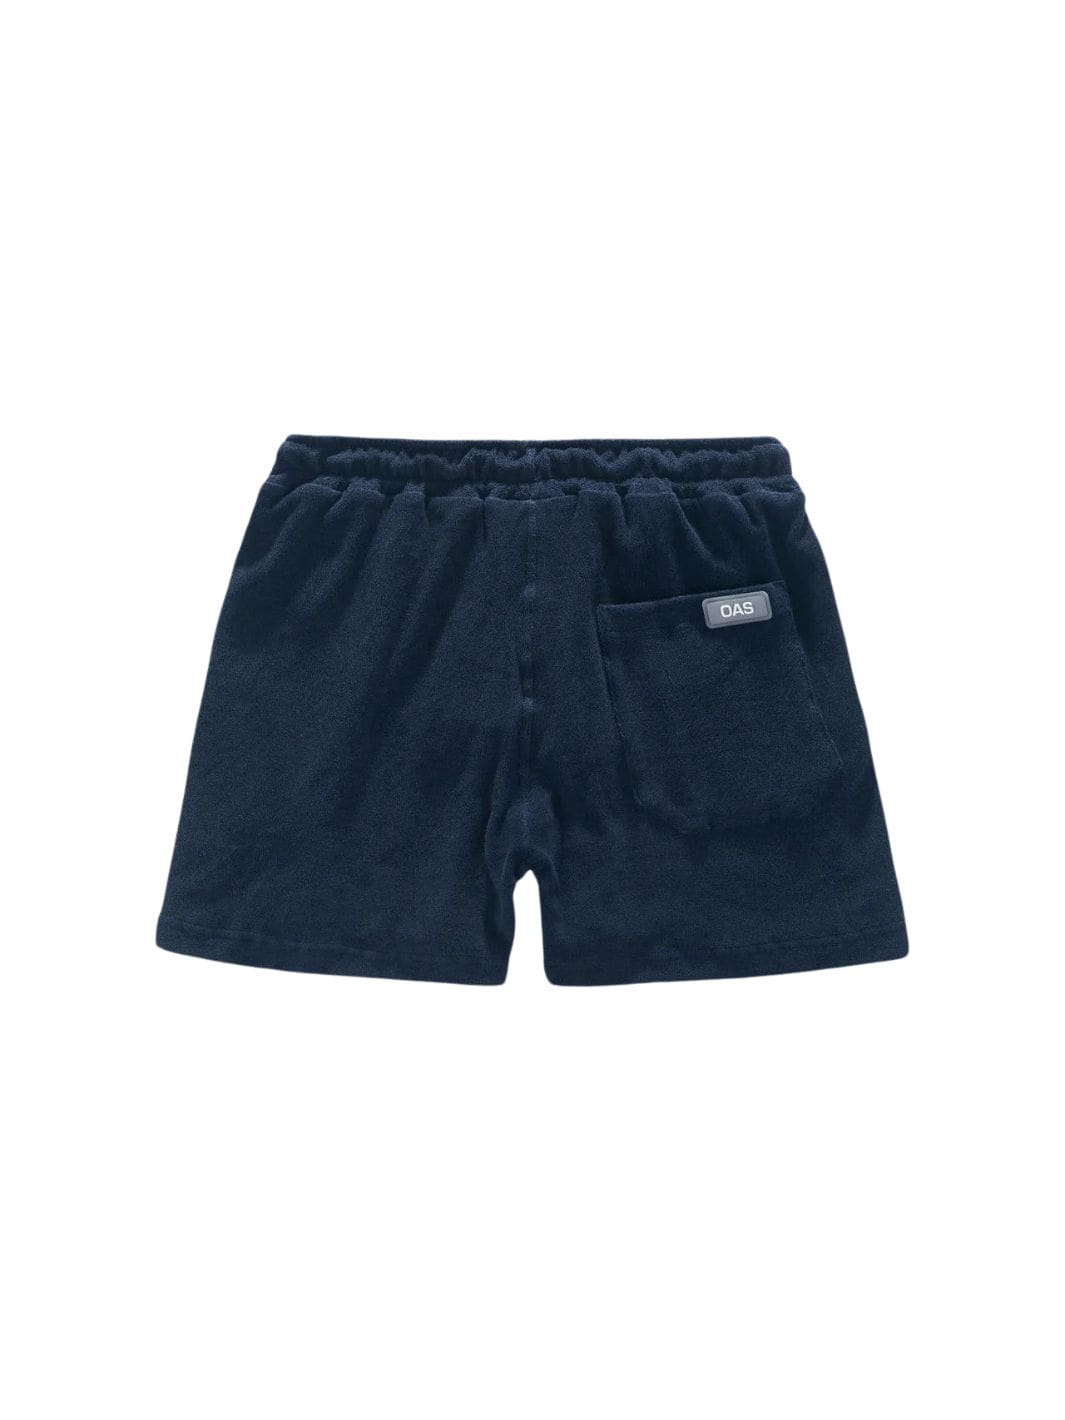 Oas Shorts Shorts | Terry Shorts Navy